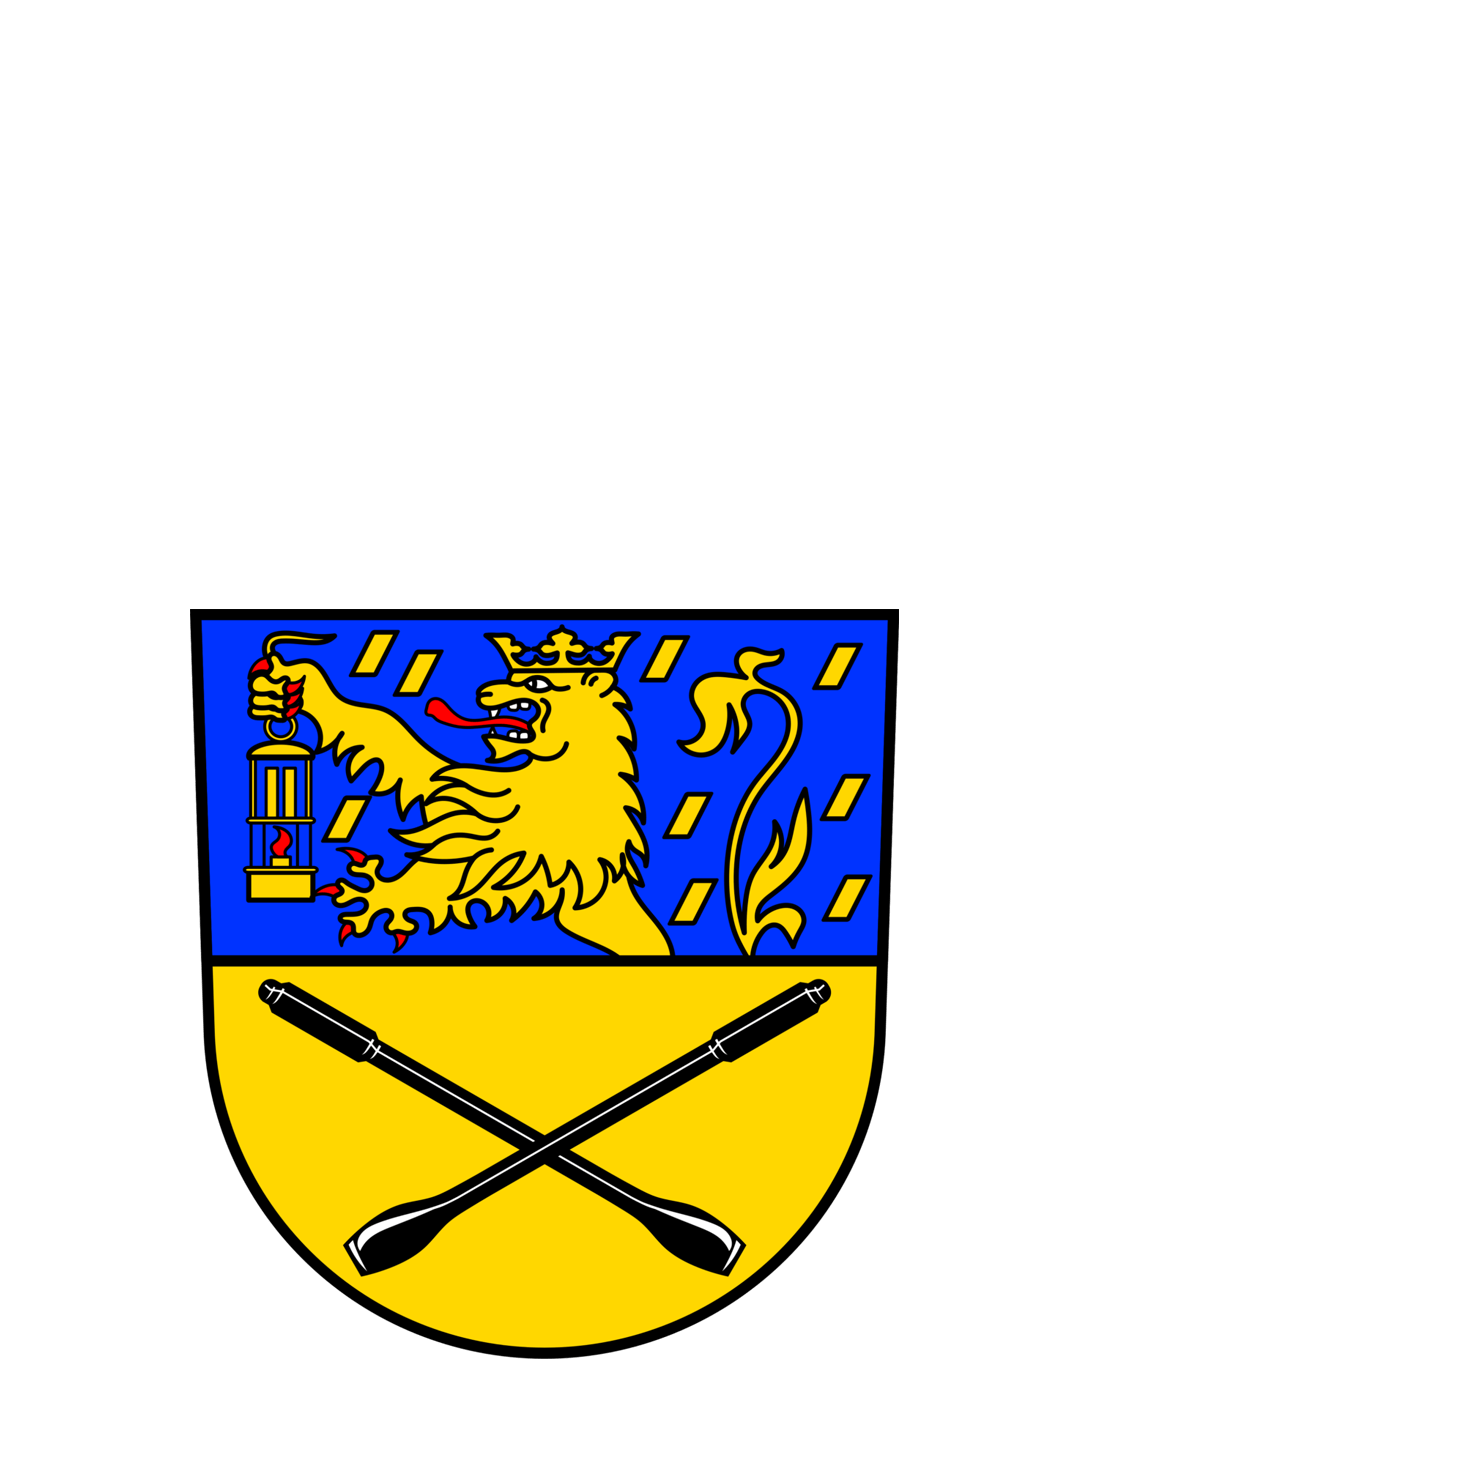 Wappen der Stadt Friedrichsthal - © Stadt Friedrichsthal